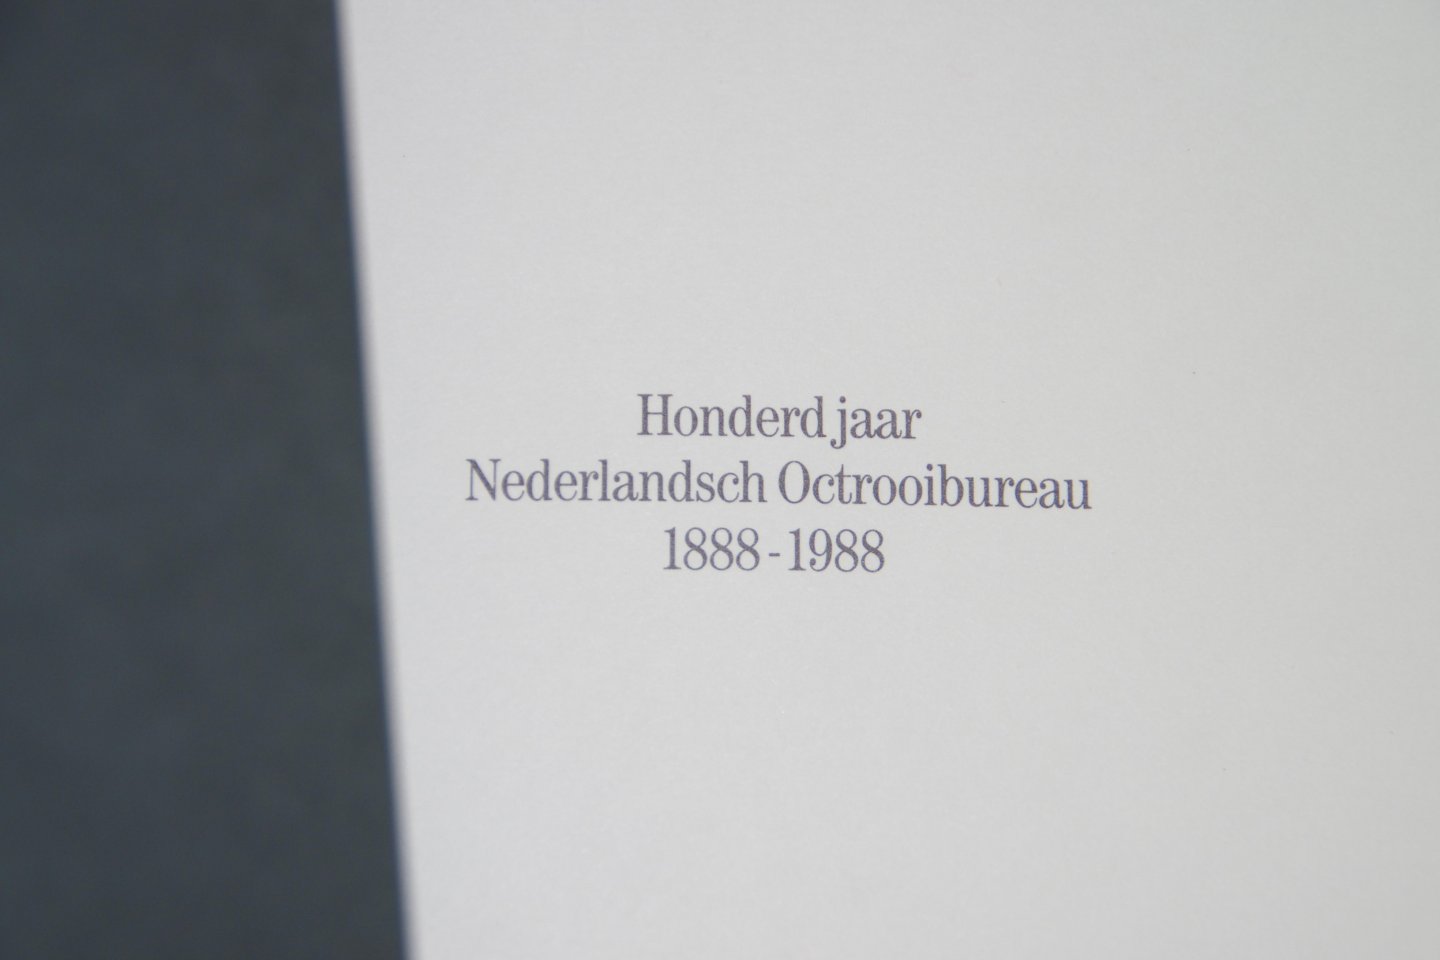 Smit E. - 100 jaar Nederlandsch Octrooibureau-1888-1988